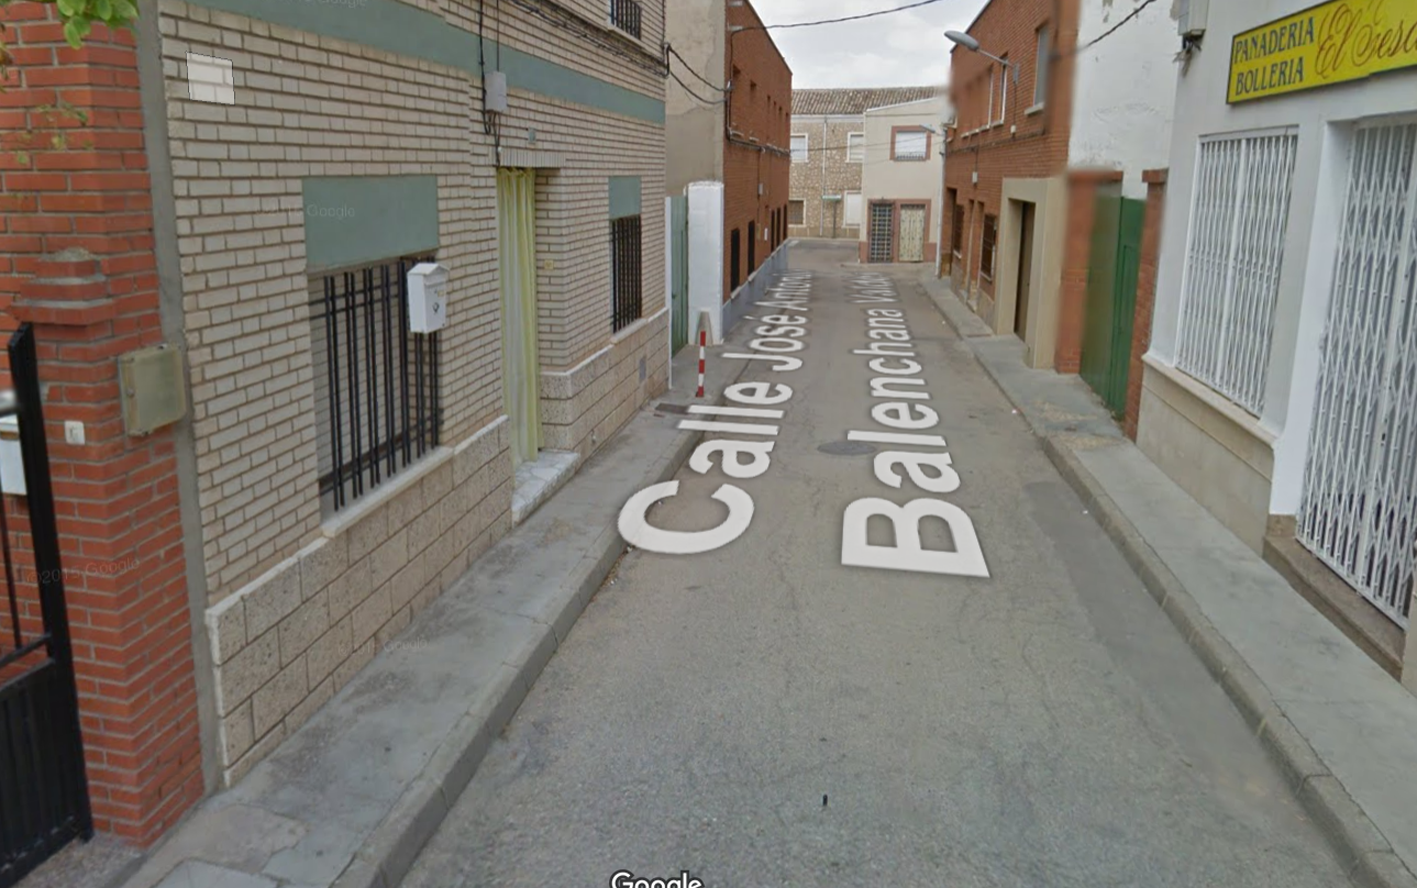 La calle José Antonio Balenchaga Valdés, donde ocurrieron los hechos.